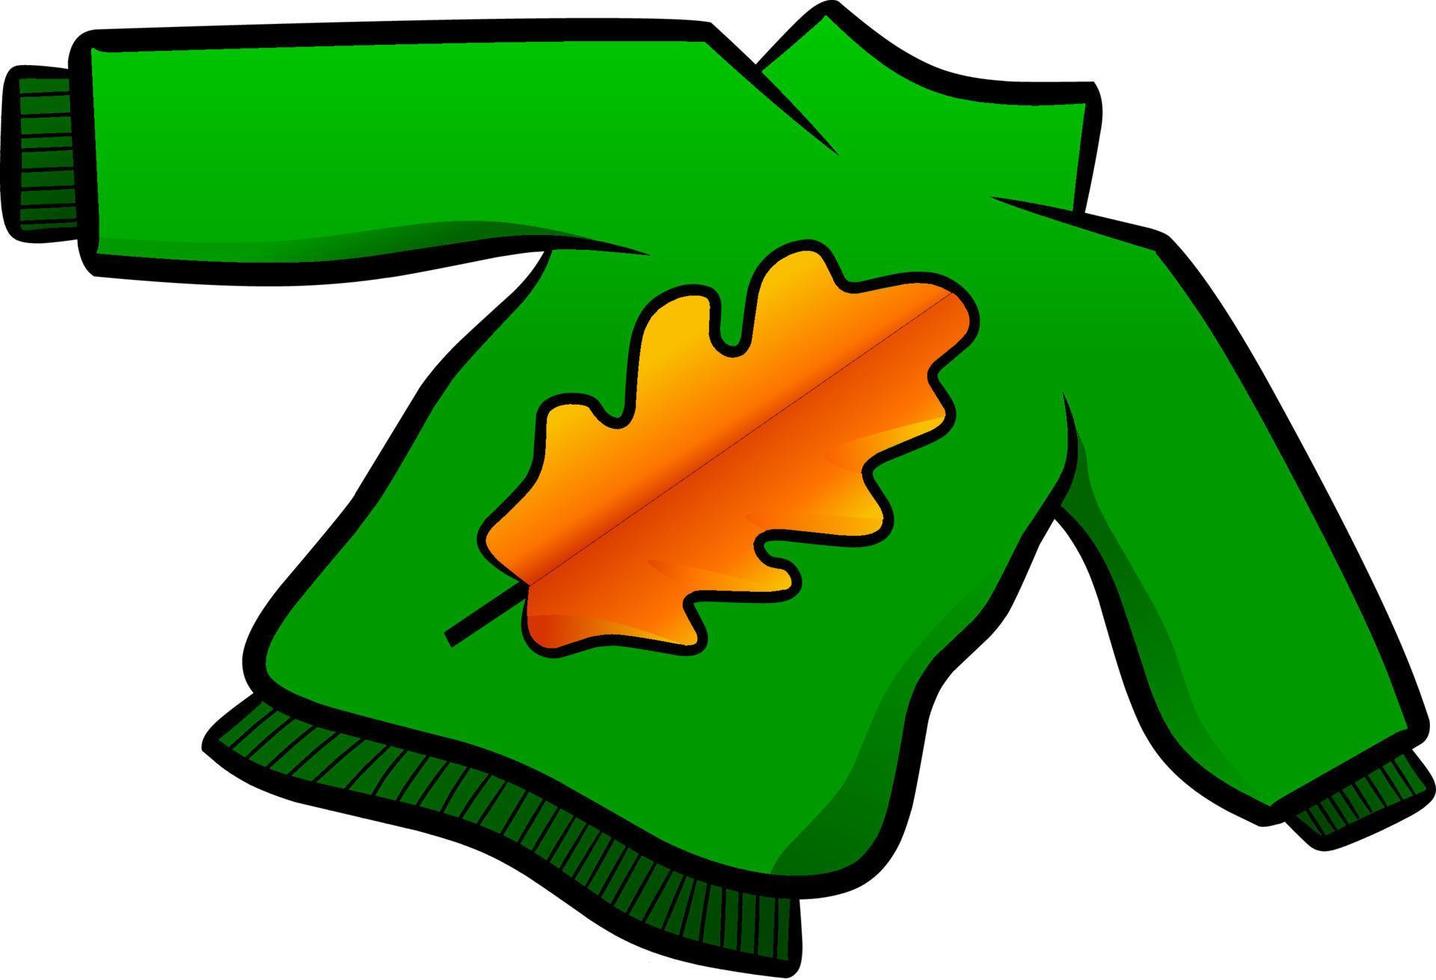 suéter verde con ilustración de vector de símbolo de hoja de roble. suéter con vector de signo de hoja de roble para logotipo, icono, símbolo, negocio, diseño o decoración. jersey estilo hygge